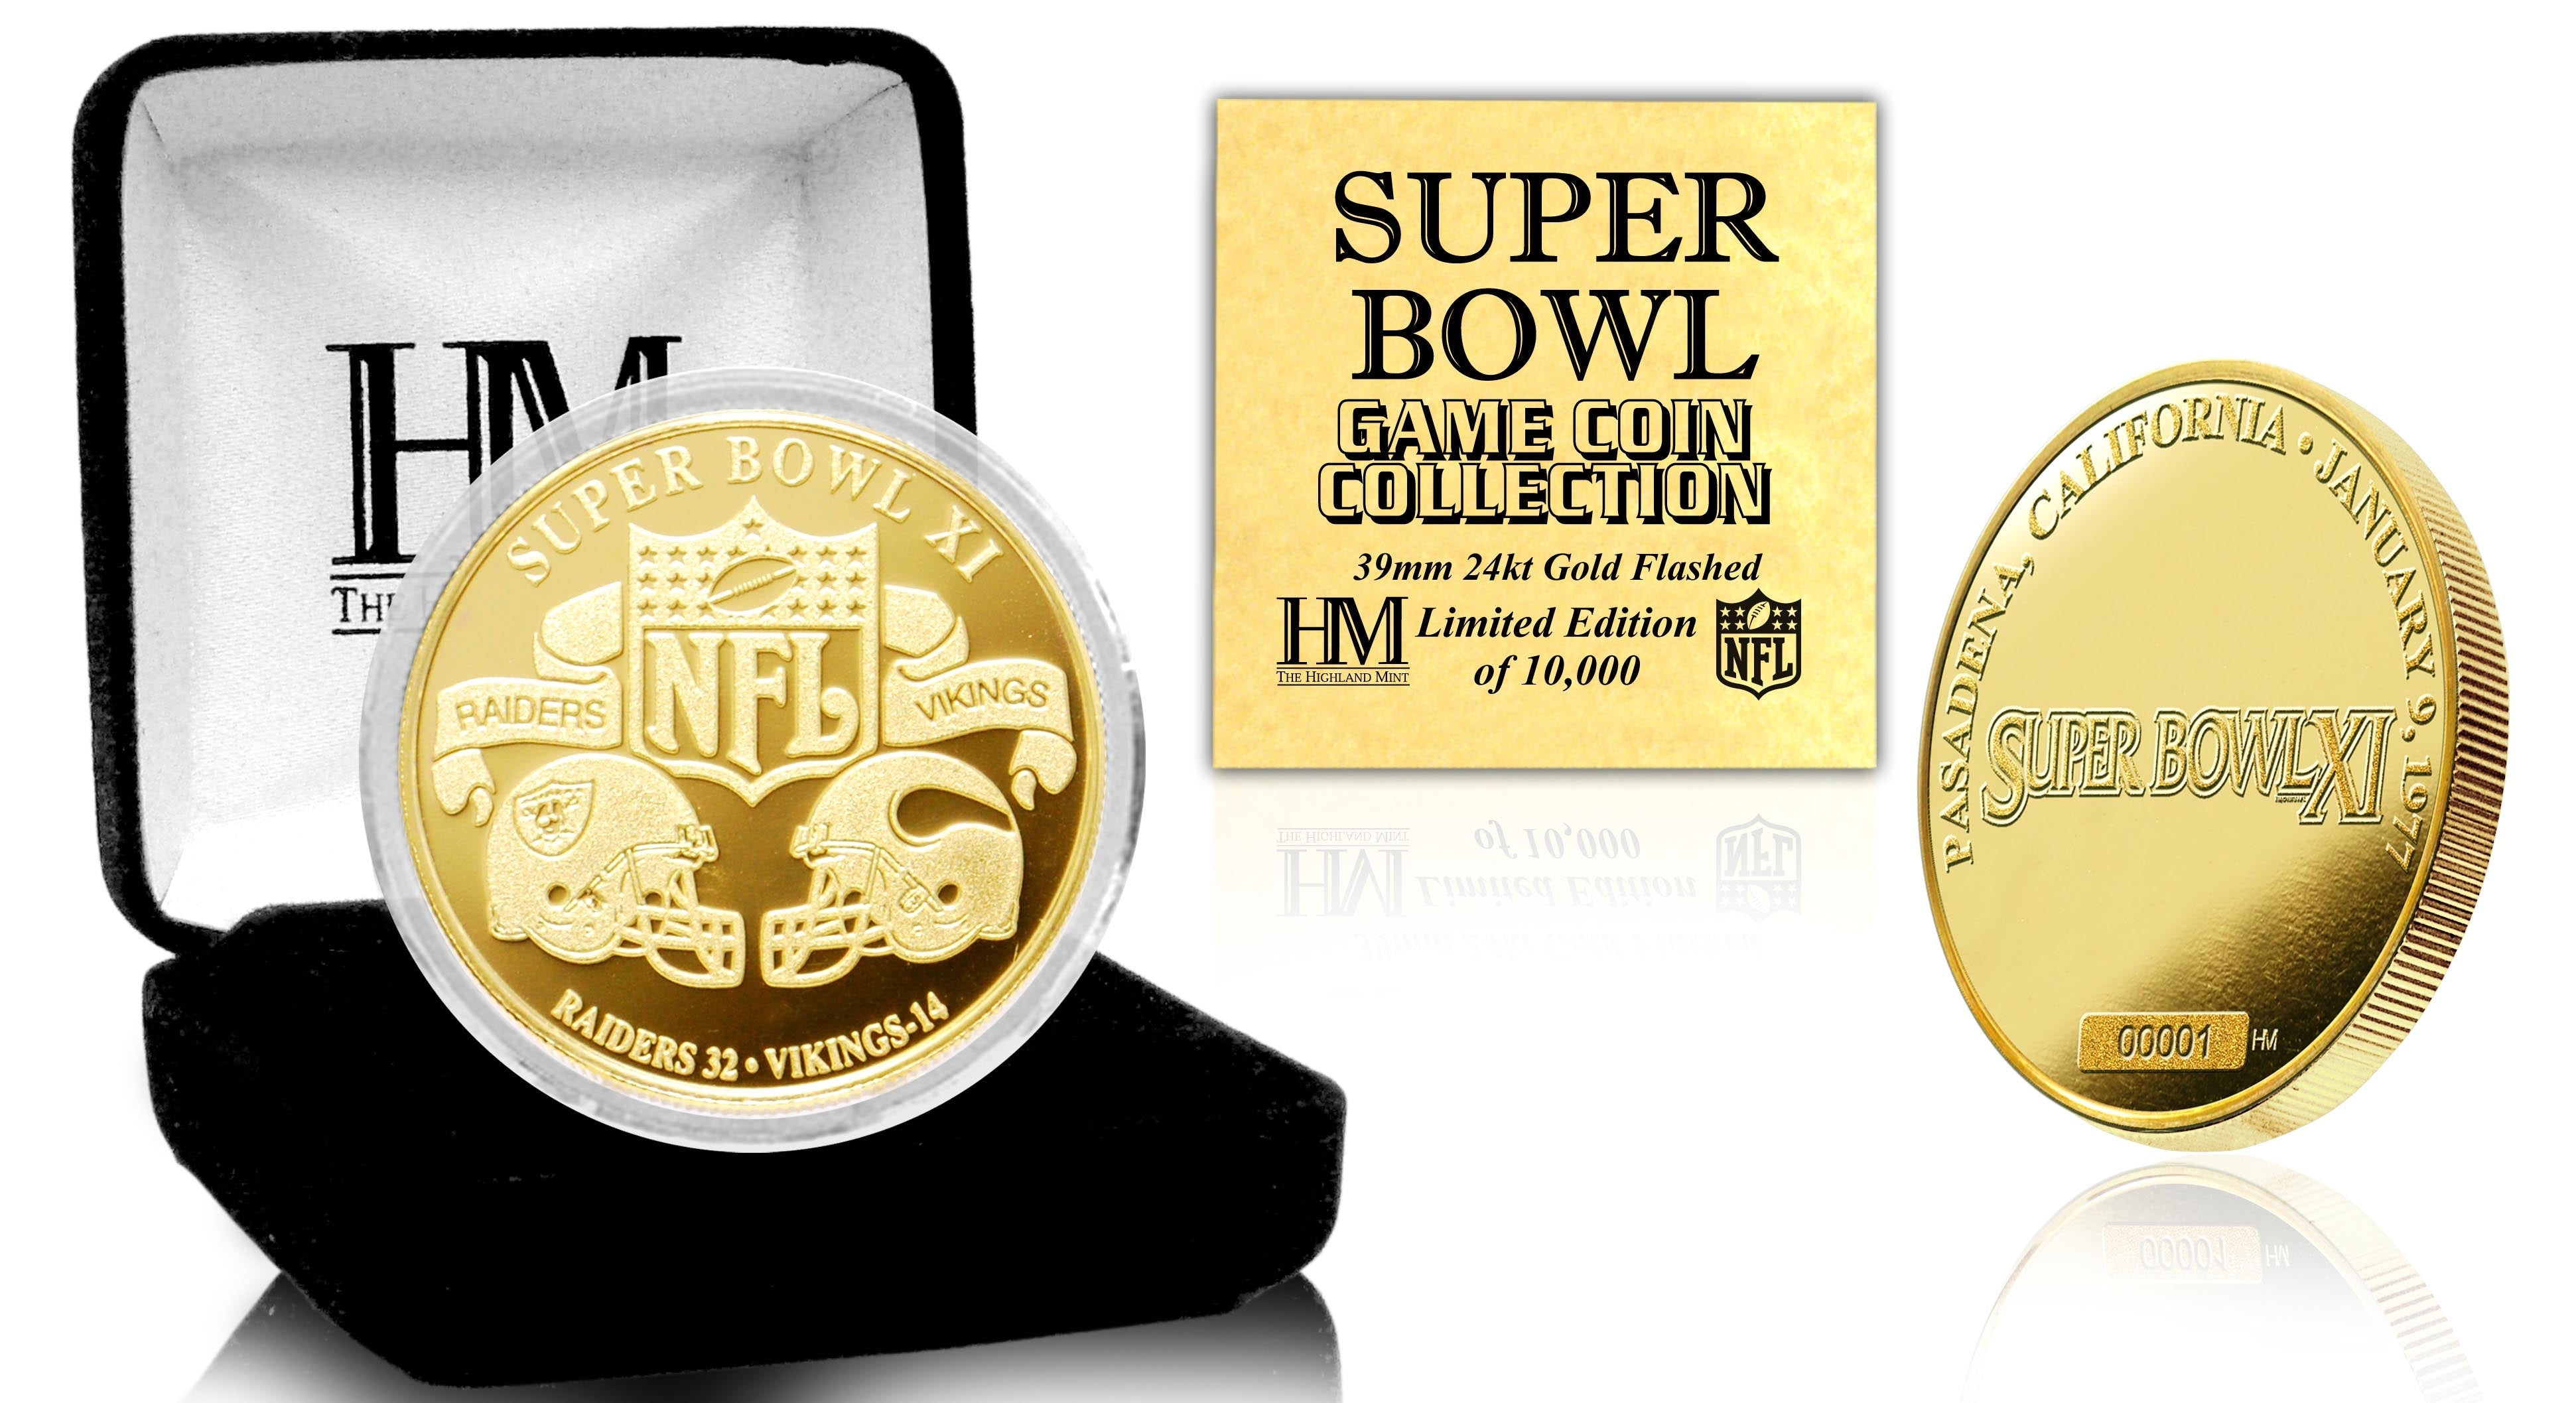 Super Bowl XI 24kt Gold Flip Coin